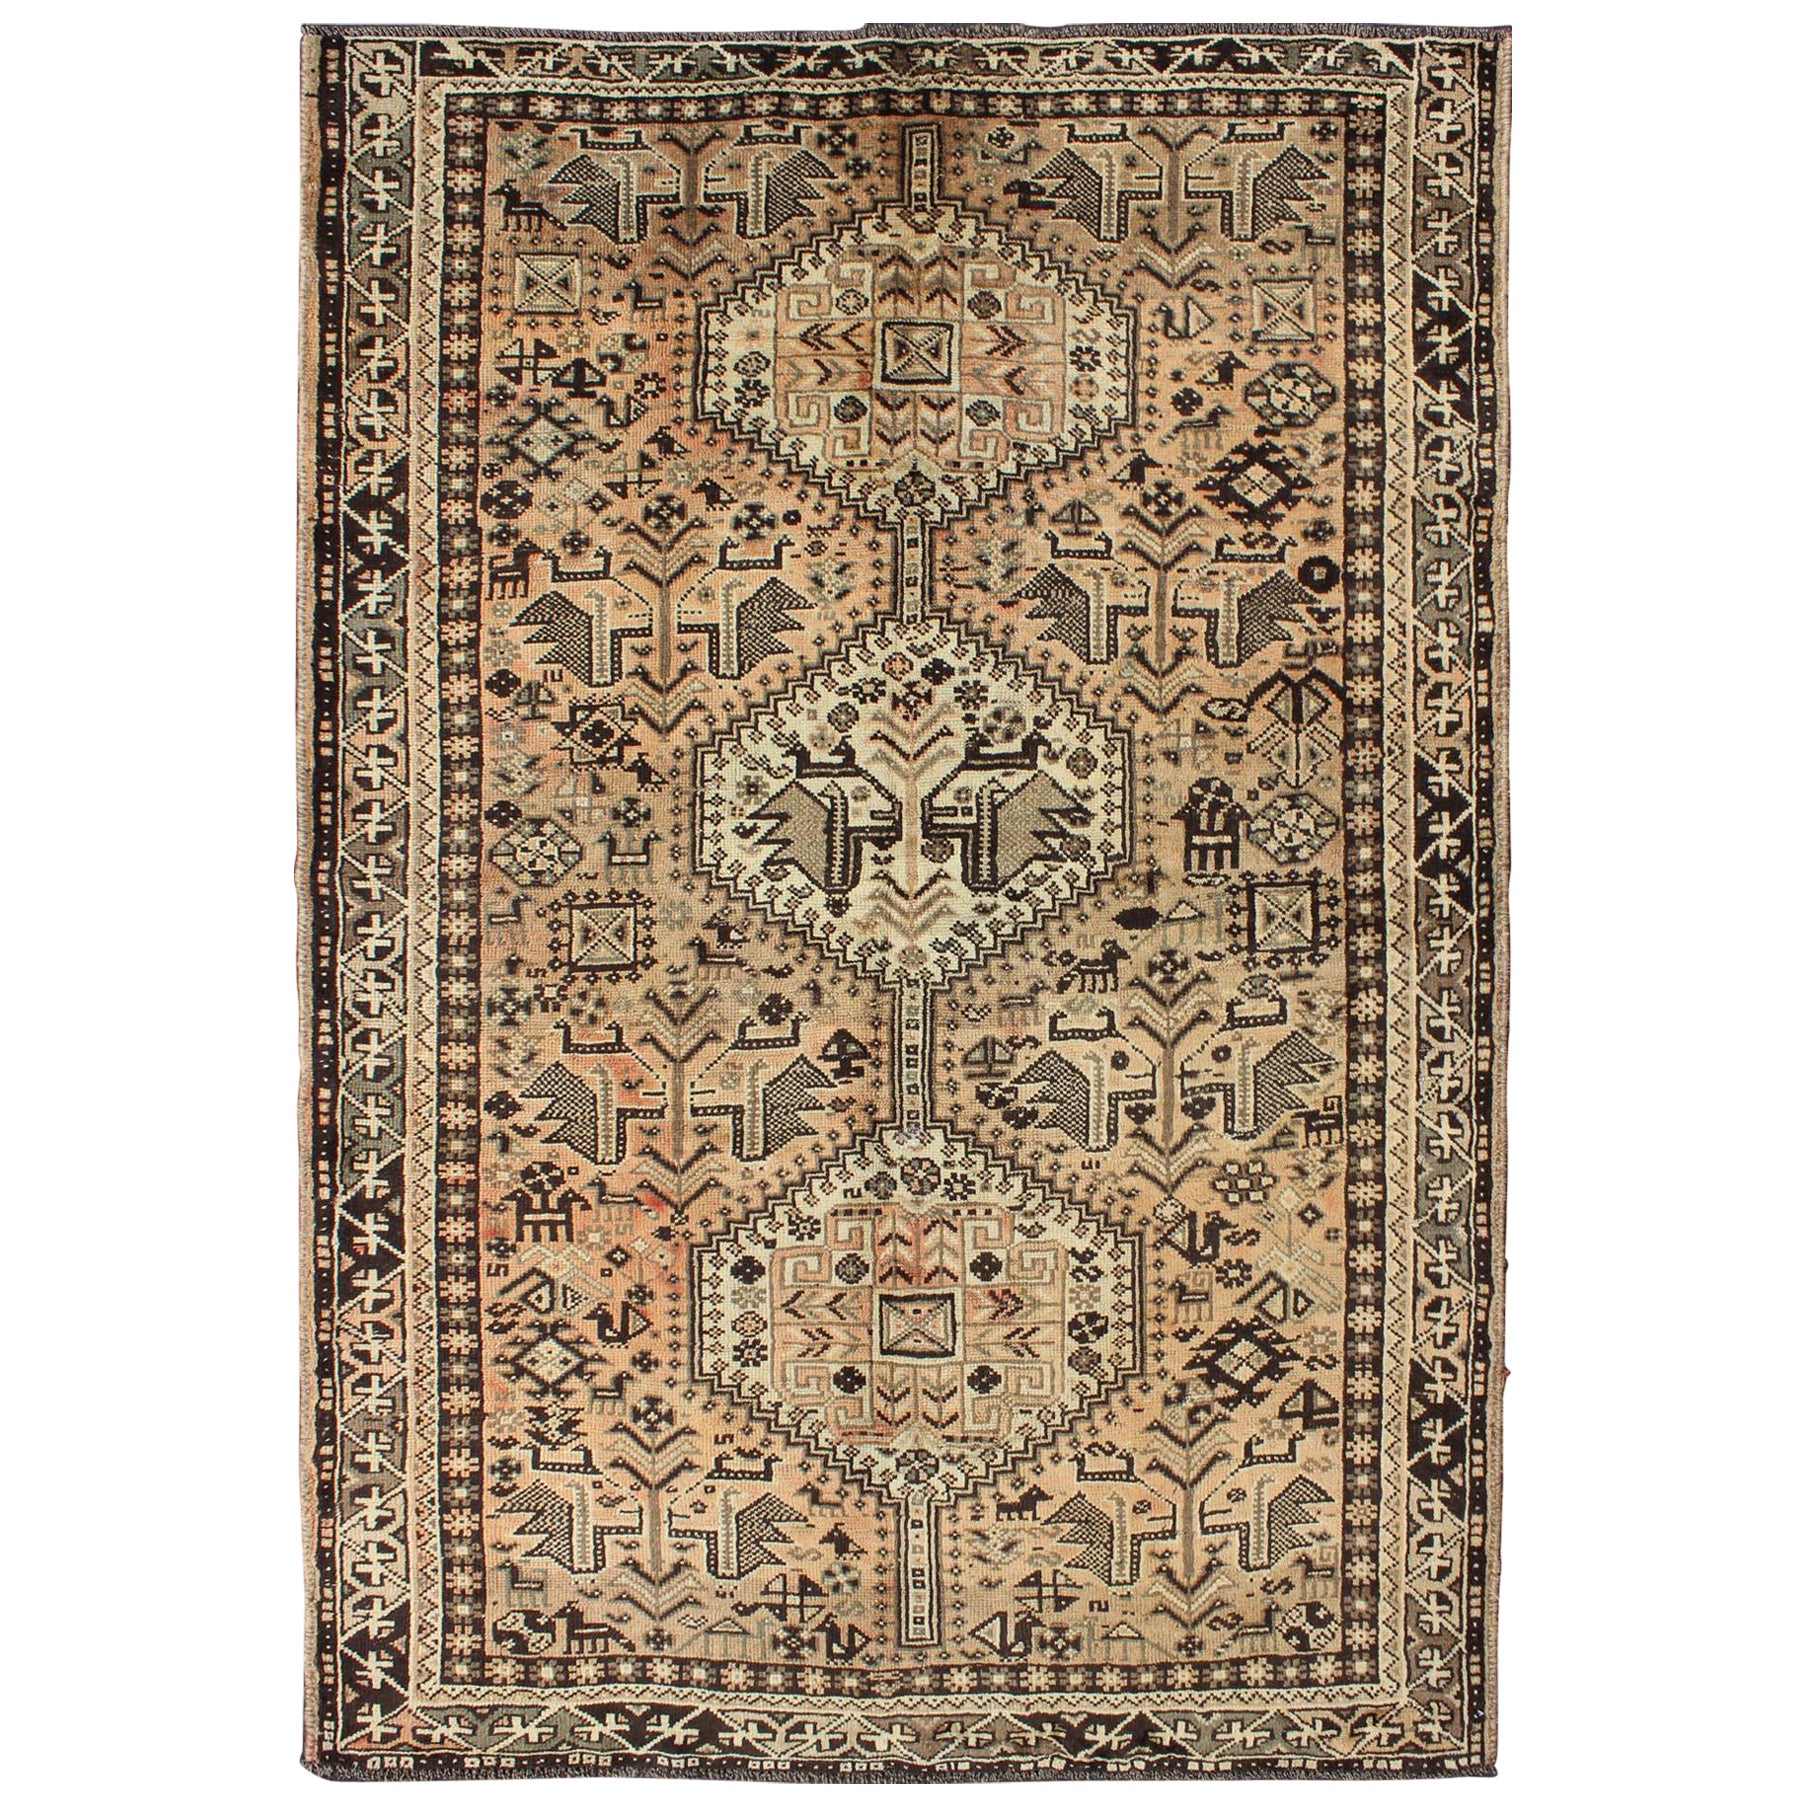 Brauner pfirsichfarbener persischer Shiraz-Teppich im Vintage-Stil mit vertikalen subgeometrischen Medaillons